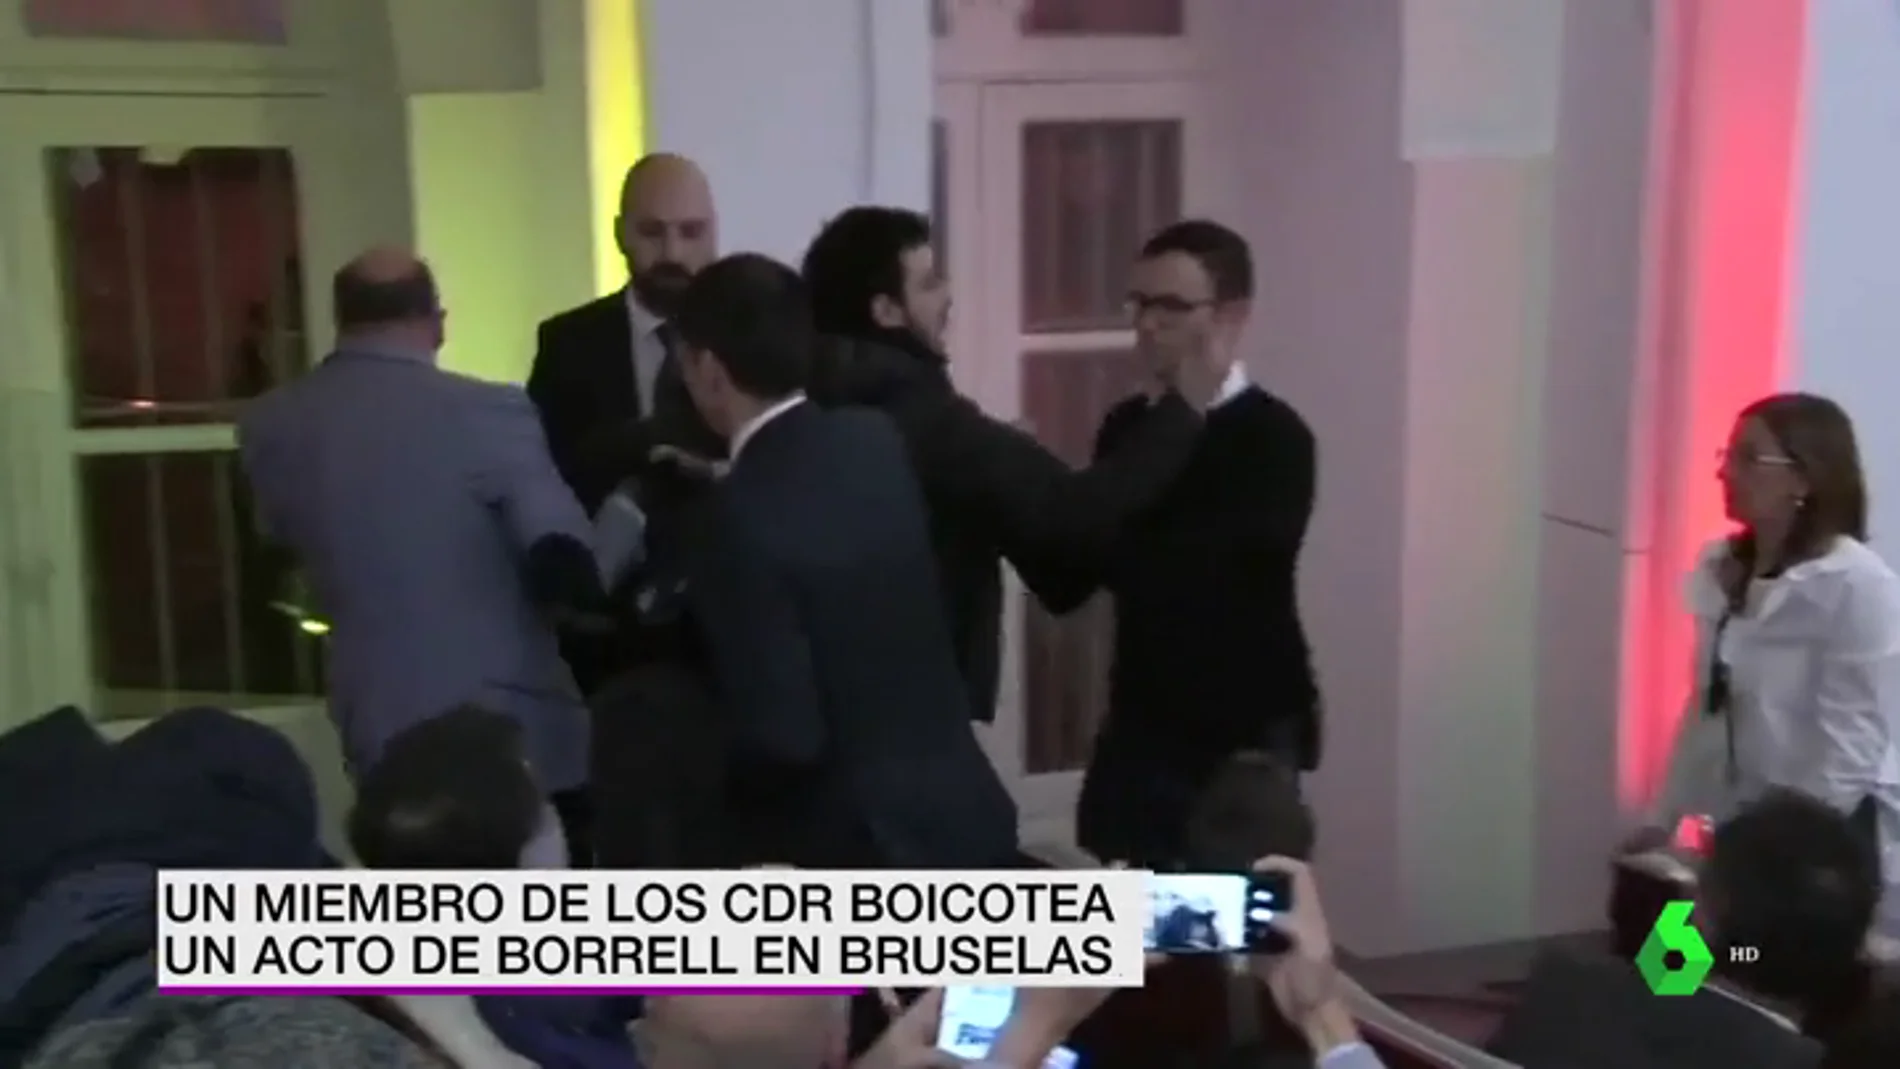 Un miembro de los CDR boicotea un acto de Josep Borrell